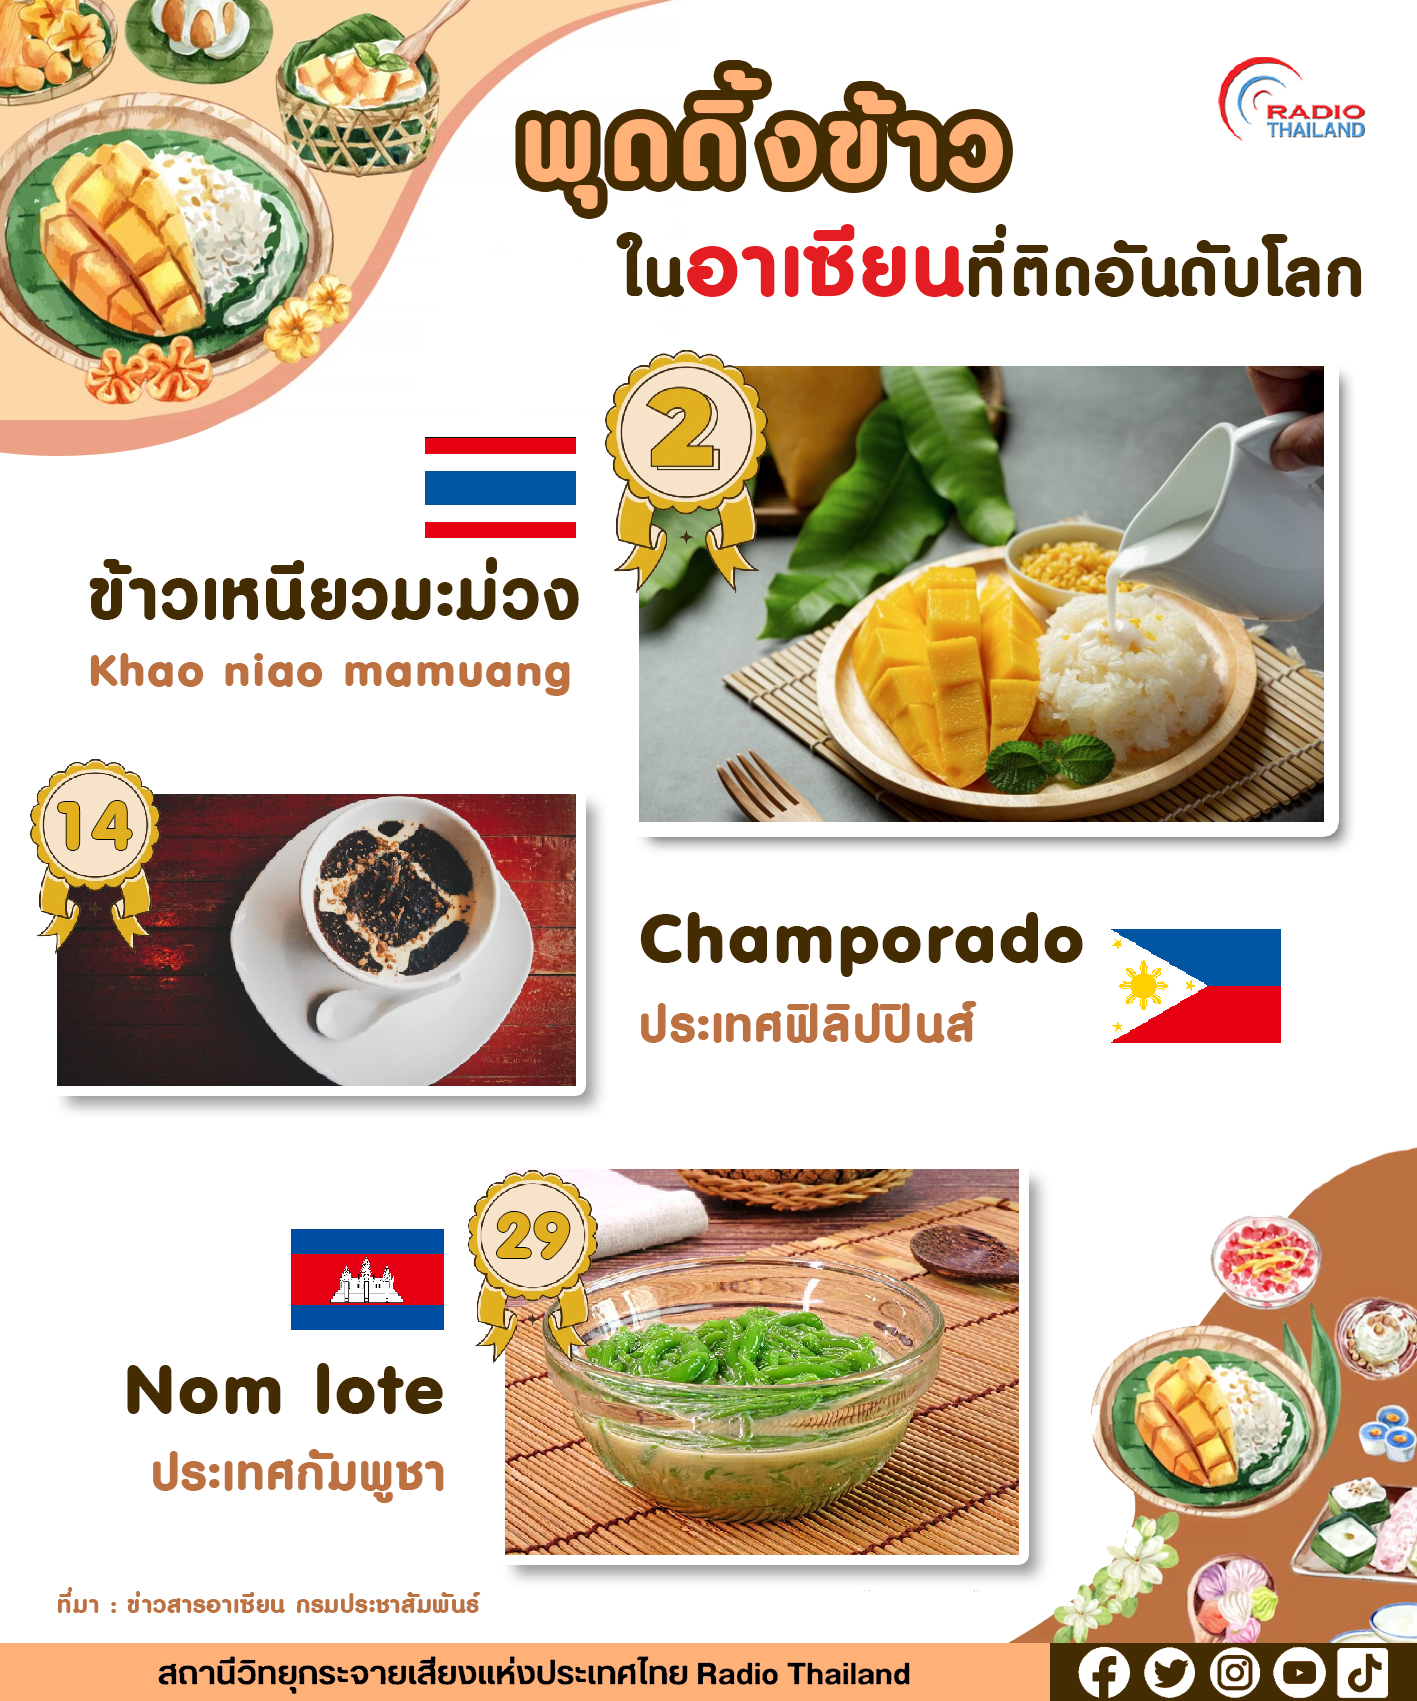 ข้าวเหนียวมะม่วงของไทย ผงาดขึ้นอันดับ 2 พุดดิ้งข้าวที่ดีที่สุดในโลก !